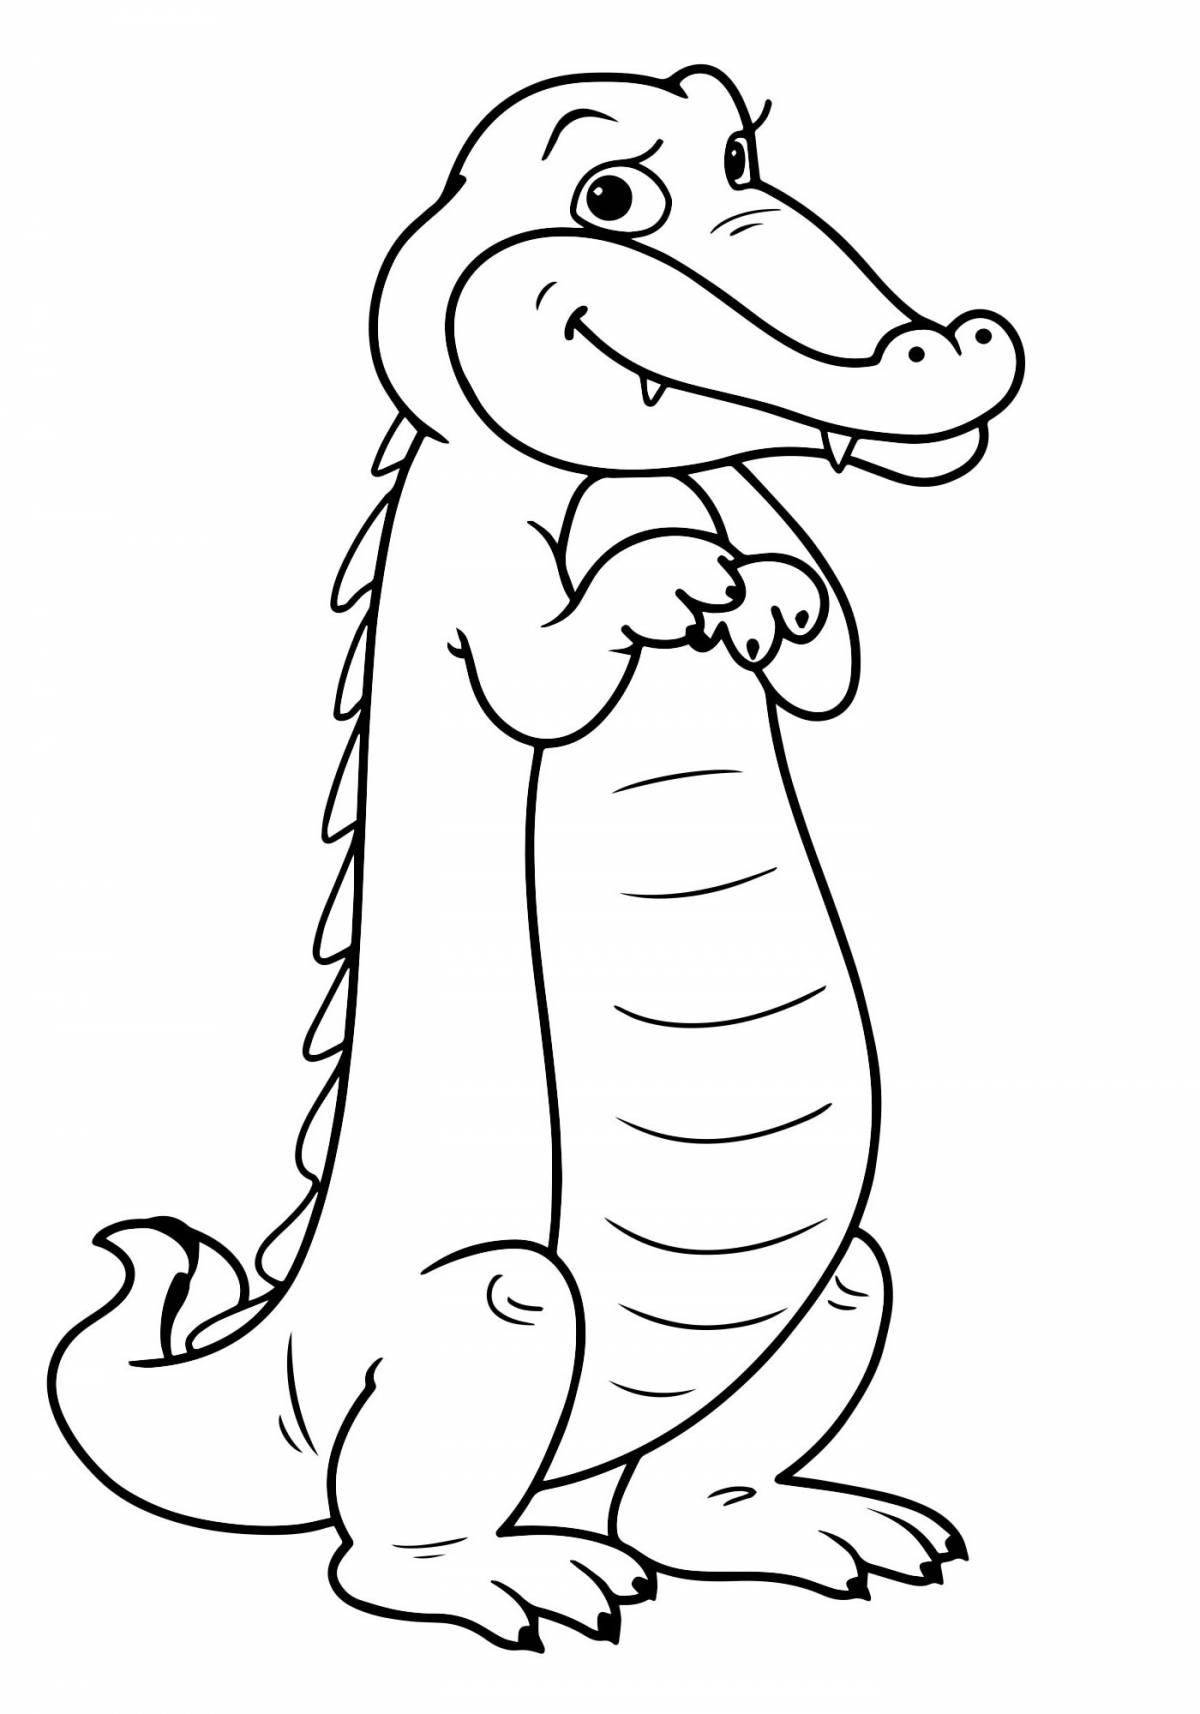 Милый крокодил-раскраска для детей 3-4 лет